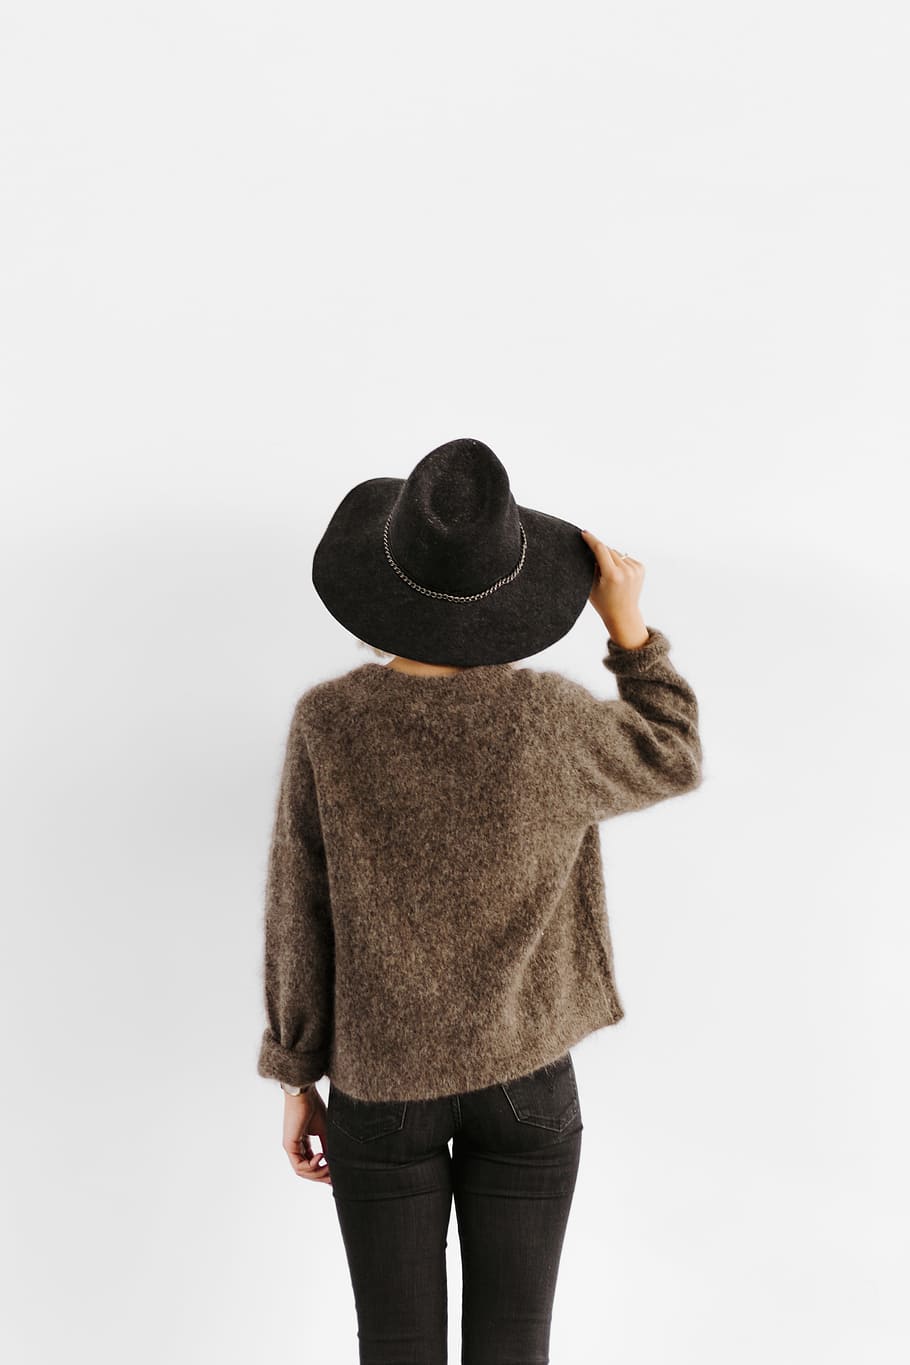 mujer, marrón, suéter, negro, sombrero, cabeza, sombrero negro, fondo blanco, tiro del estudio, de pie